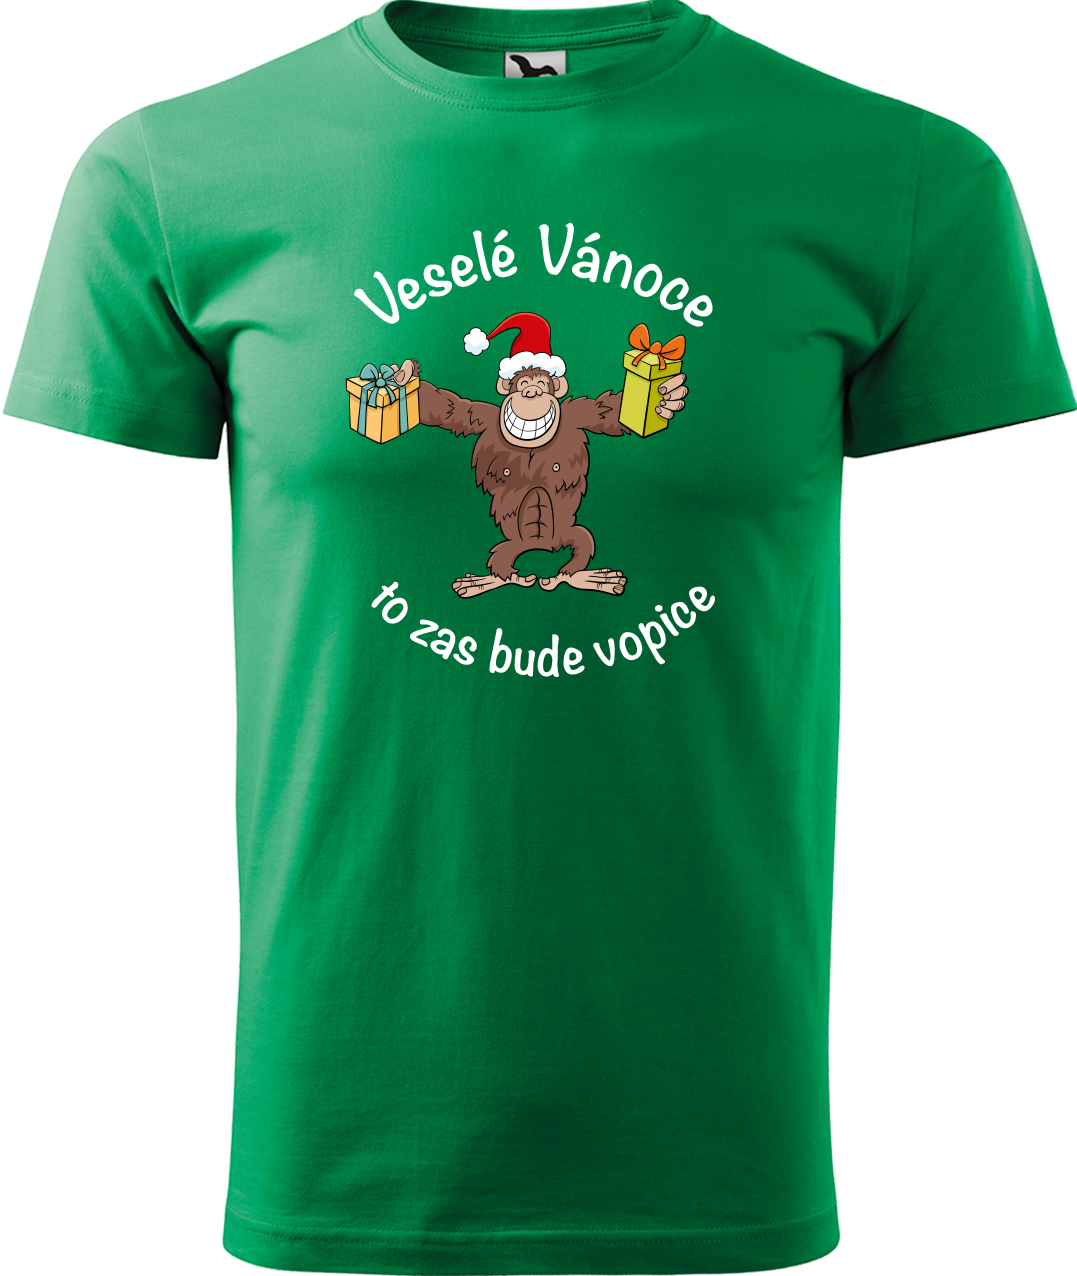 Pánské vánoční tričko - Veselé Vánoce to zas bude vopice (hnědý opičák) Velikost: L, Barva: Středně zelená (16)